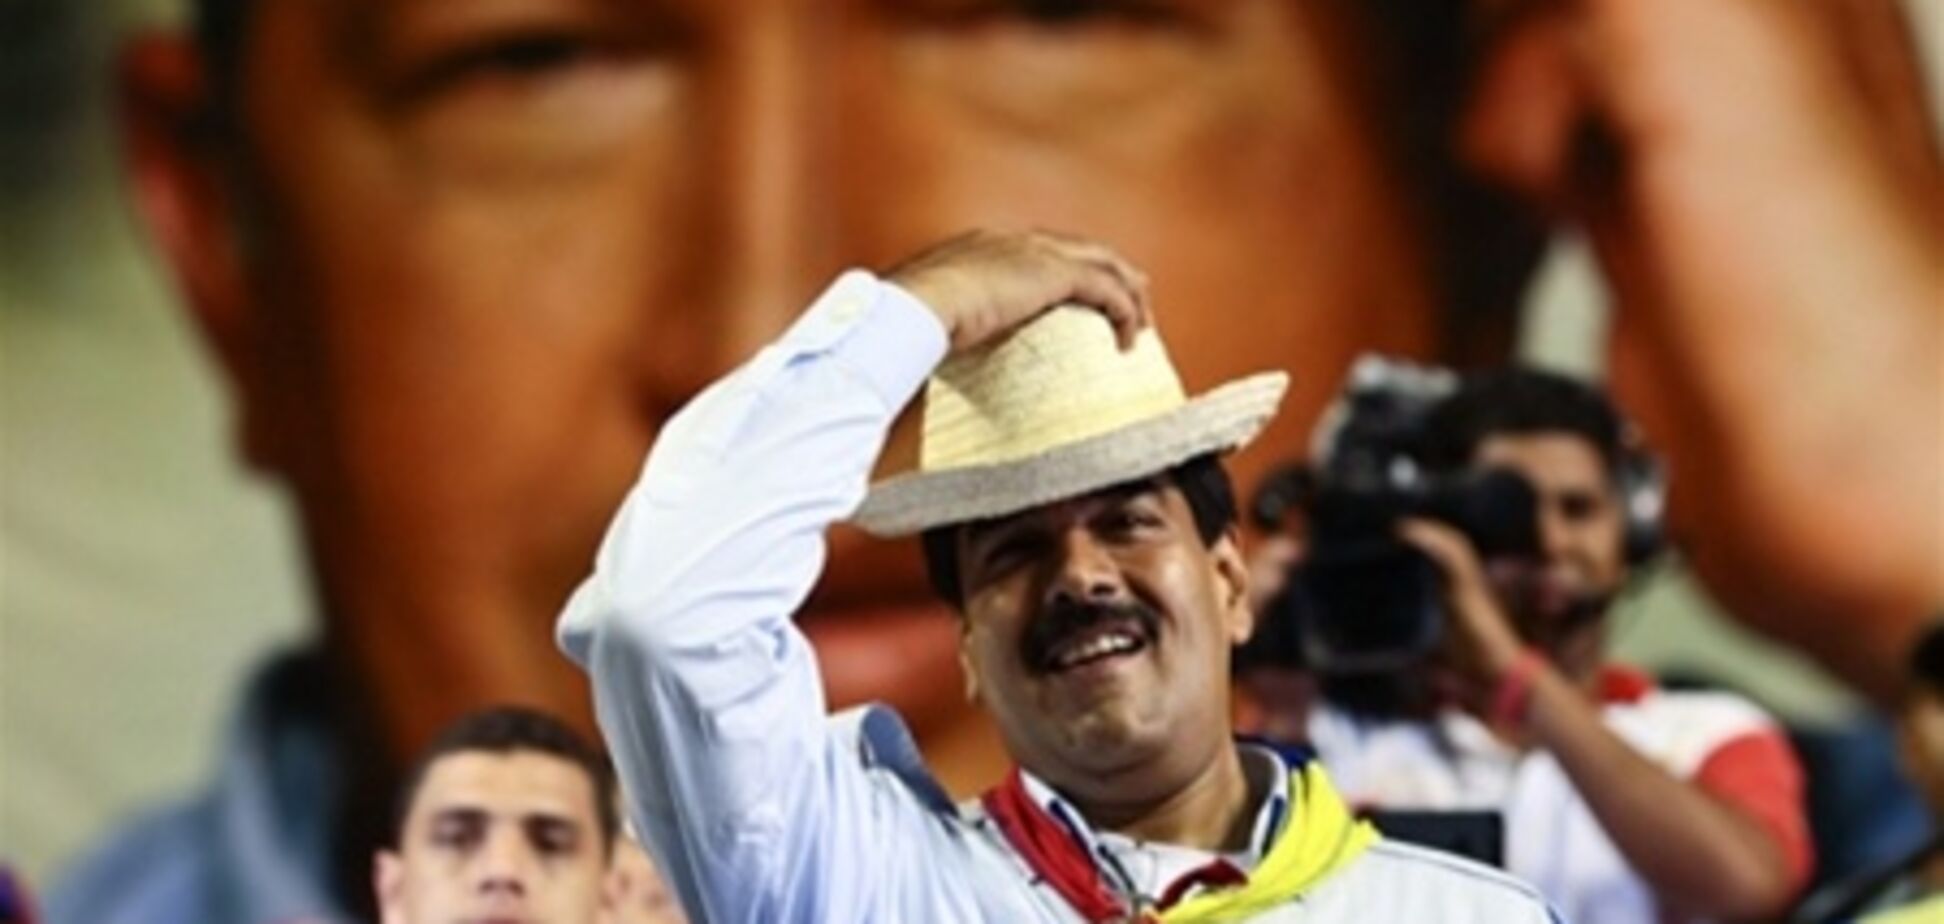 Чавес в виде птицы благословил своего преемника на участие в выборах